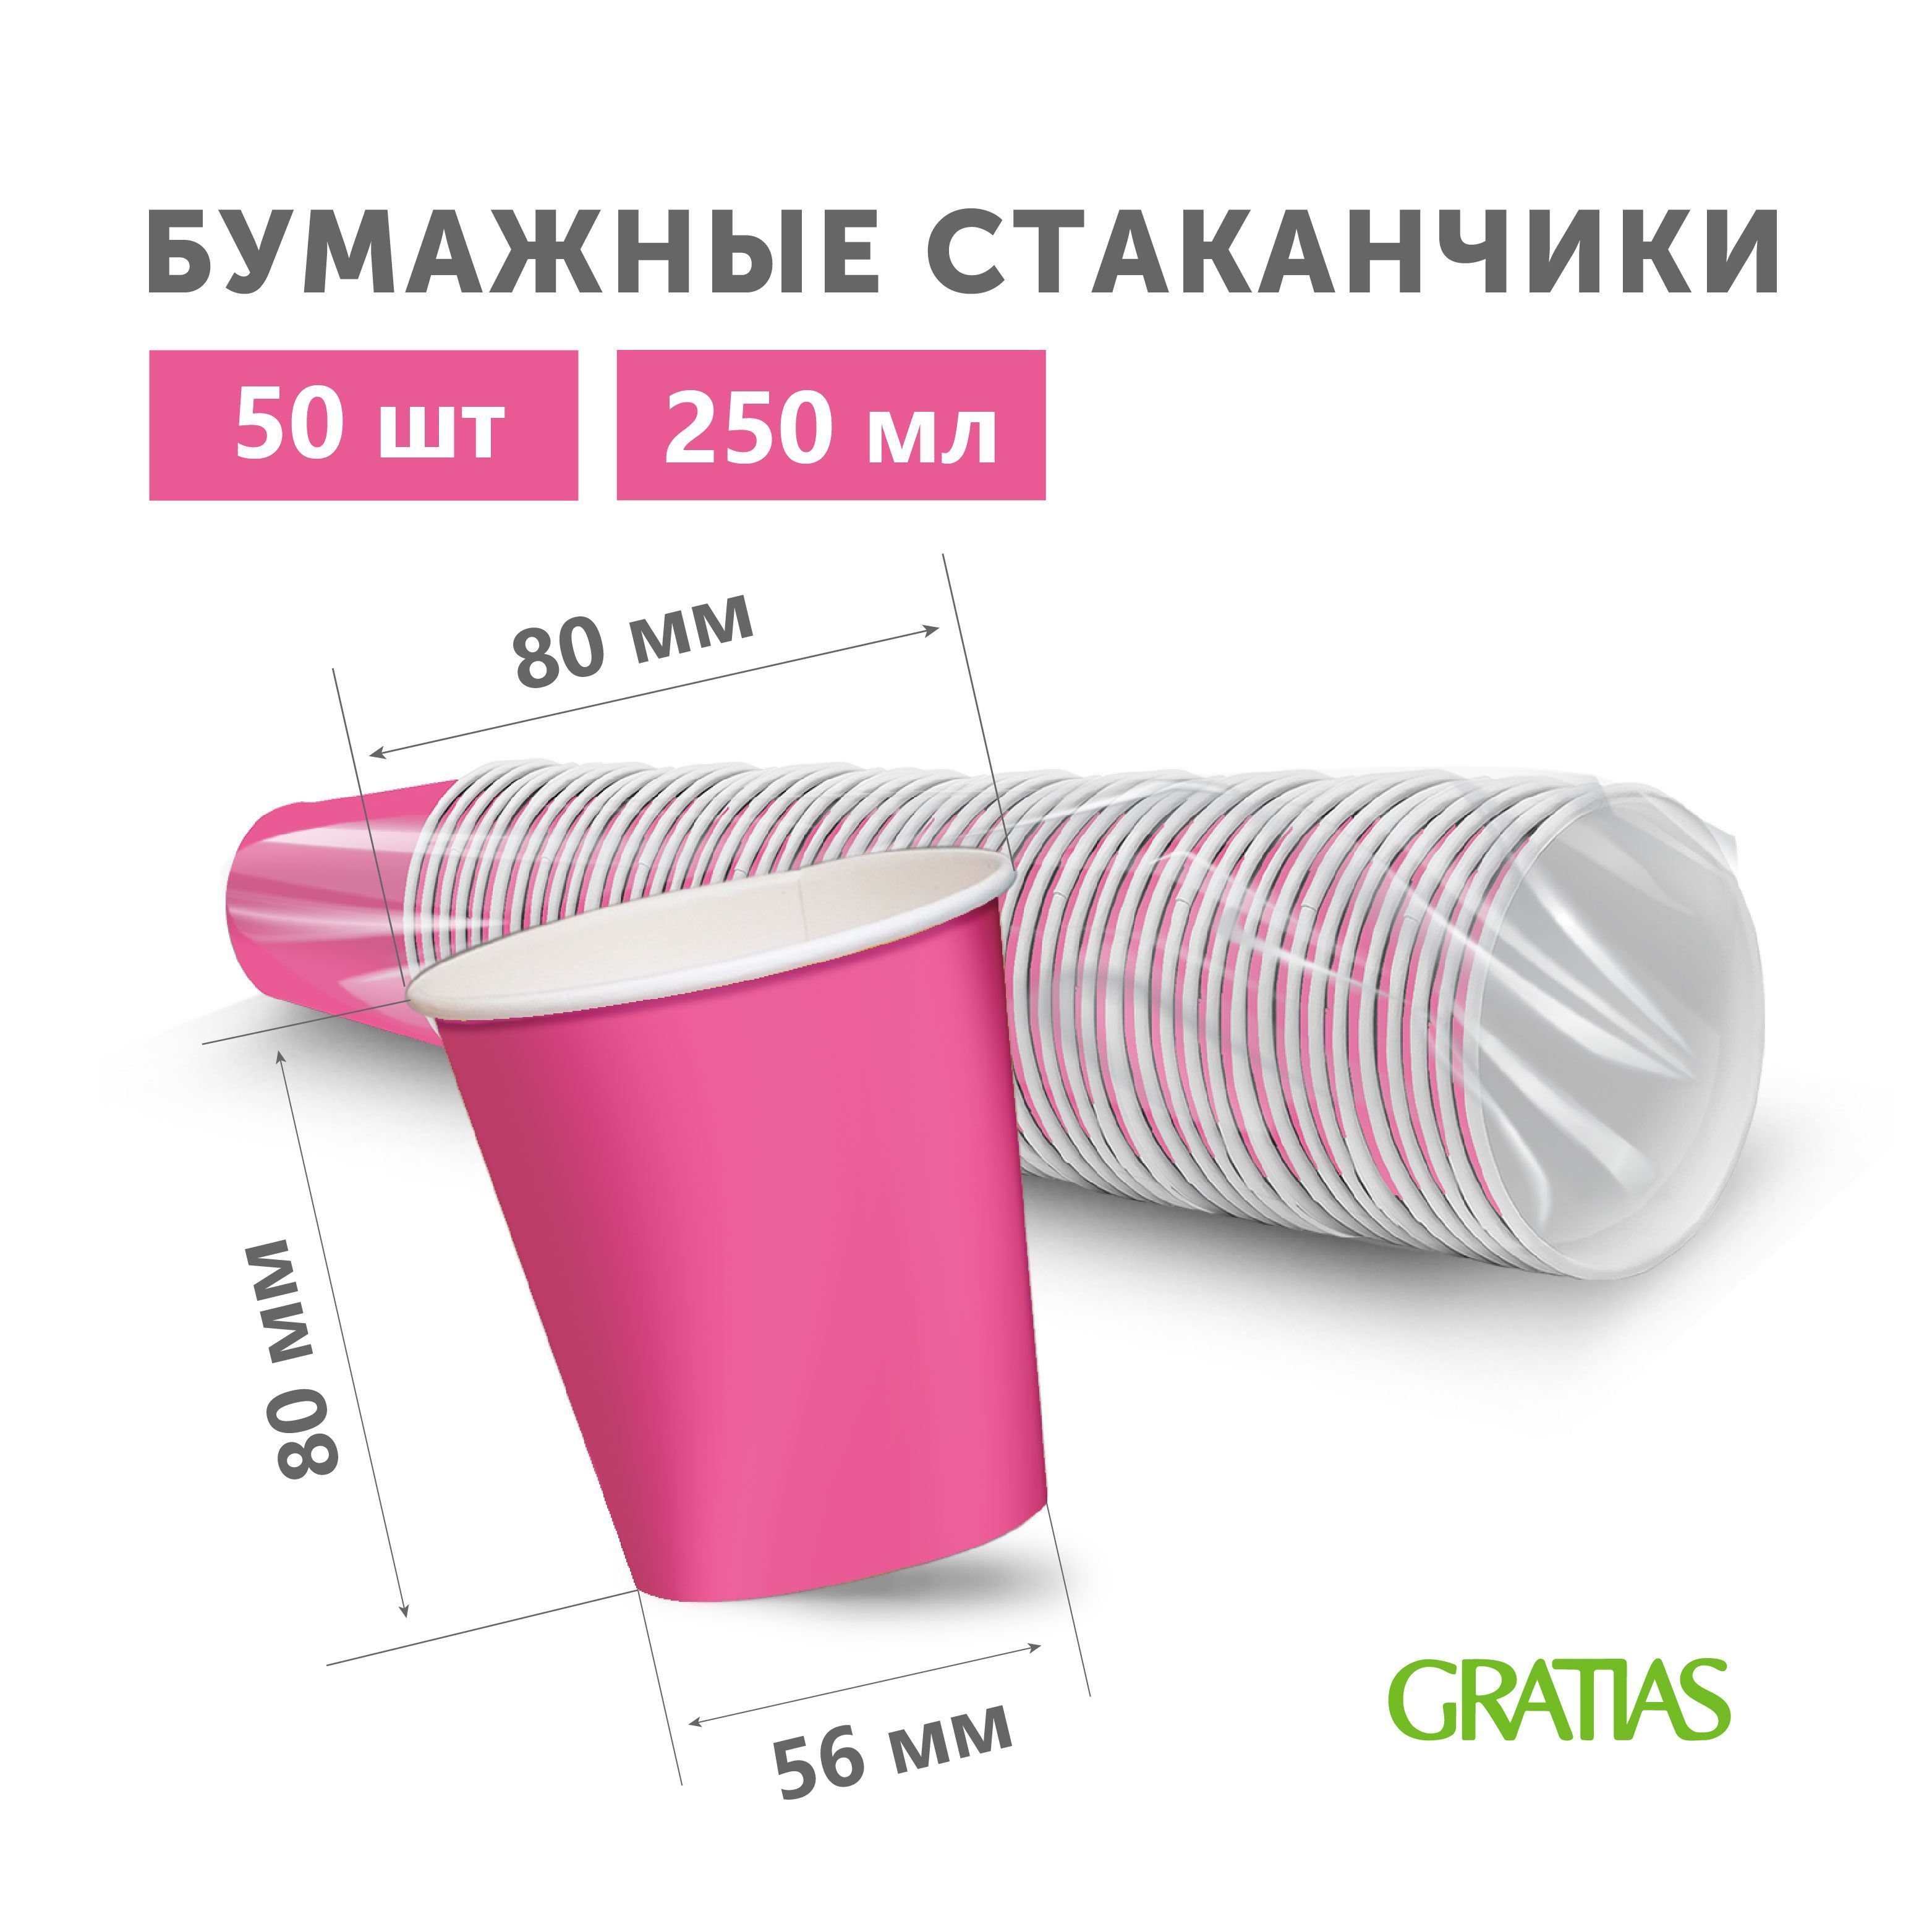 Стаканы Gratias бумажные одноразовые Розовые Фуксия, 250 мл х 50 шт